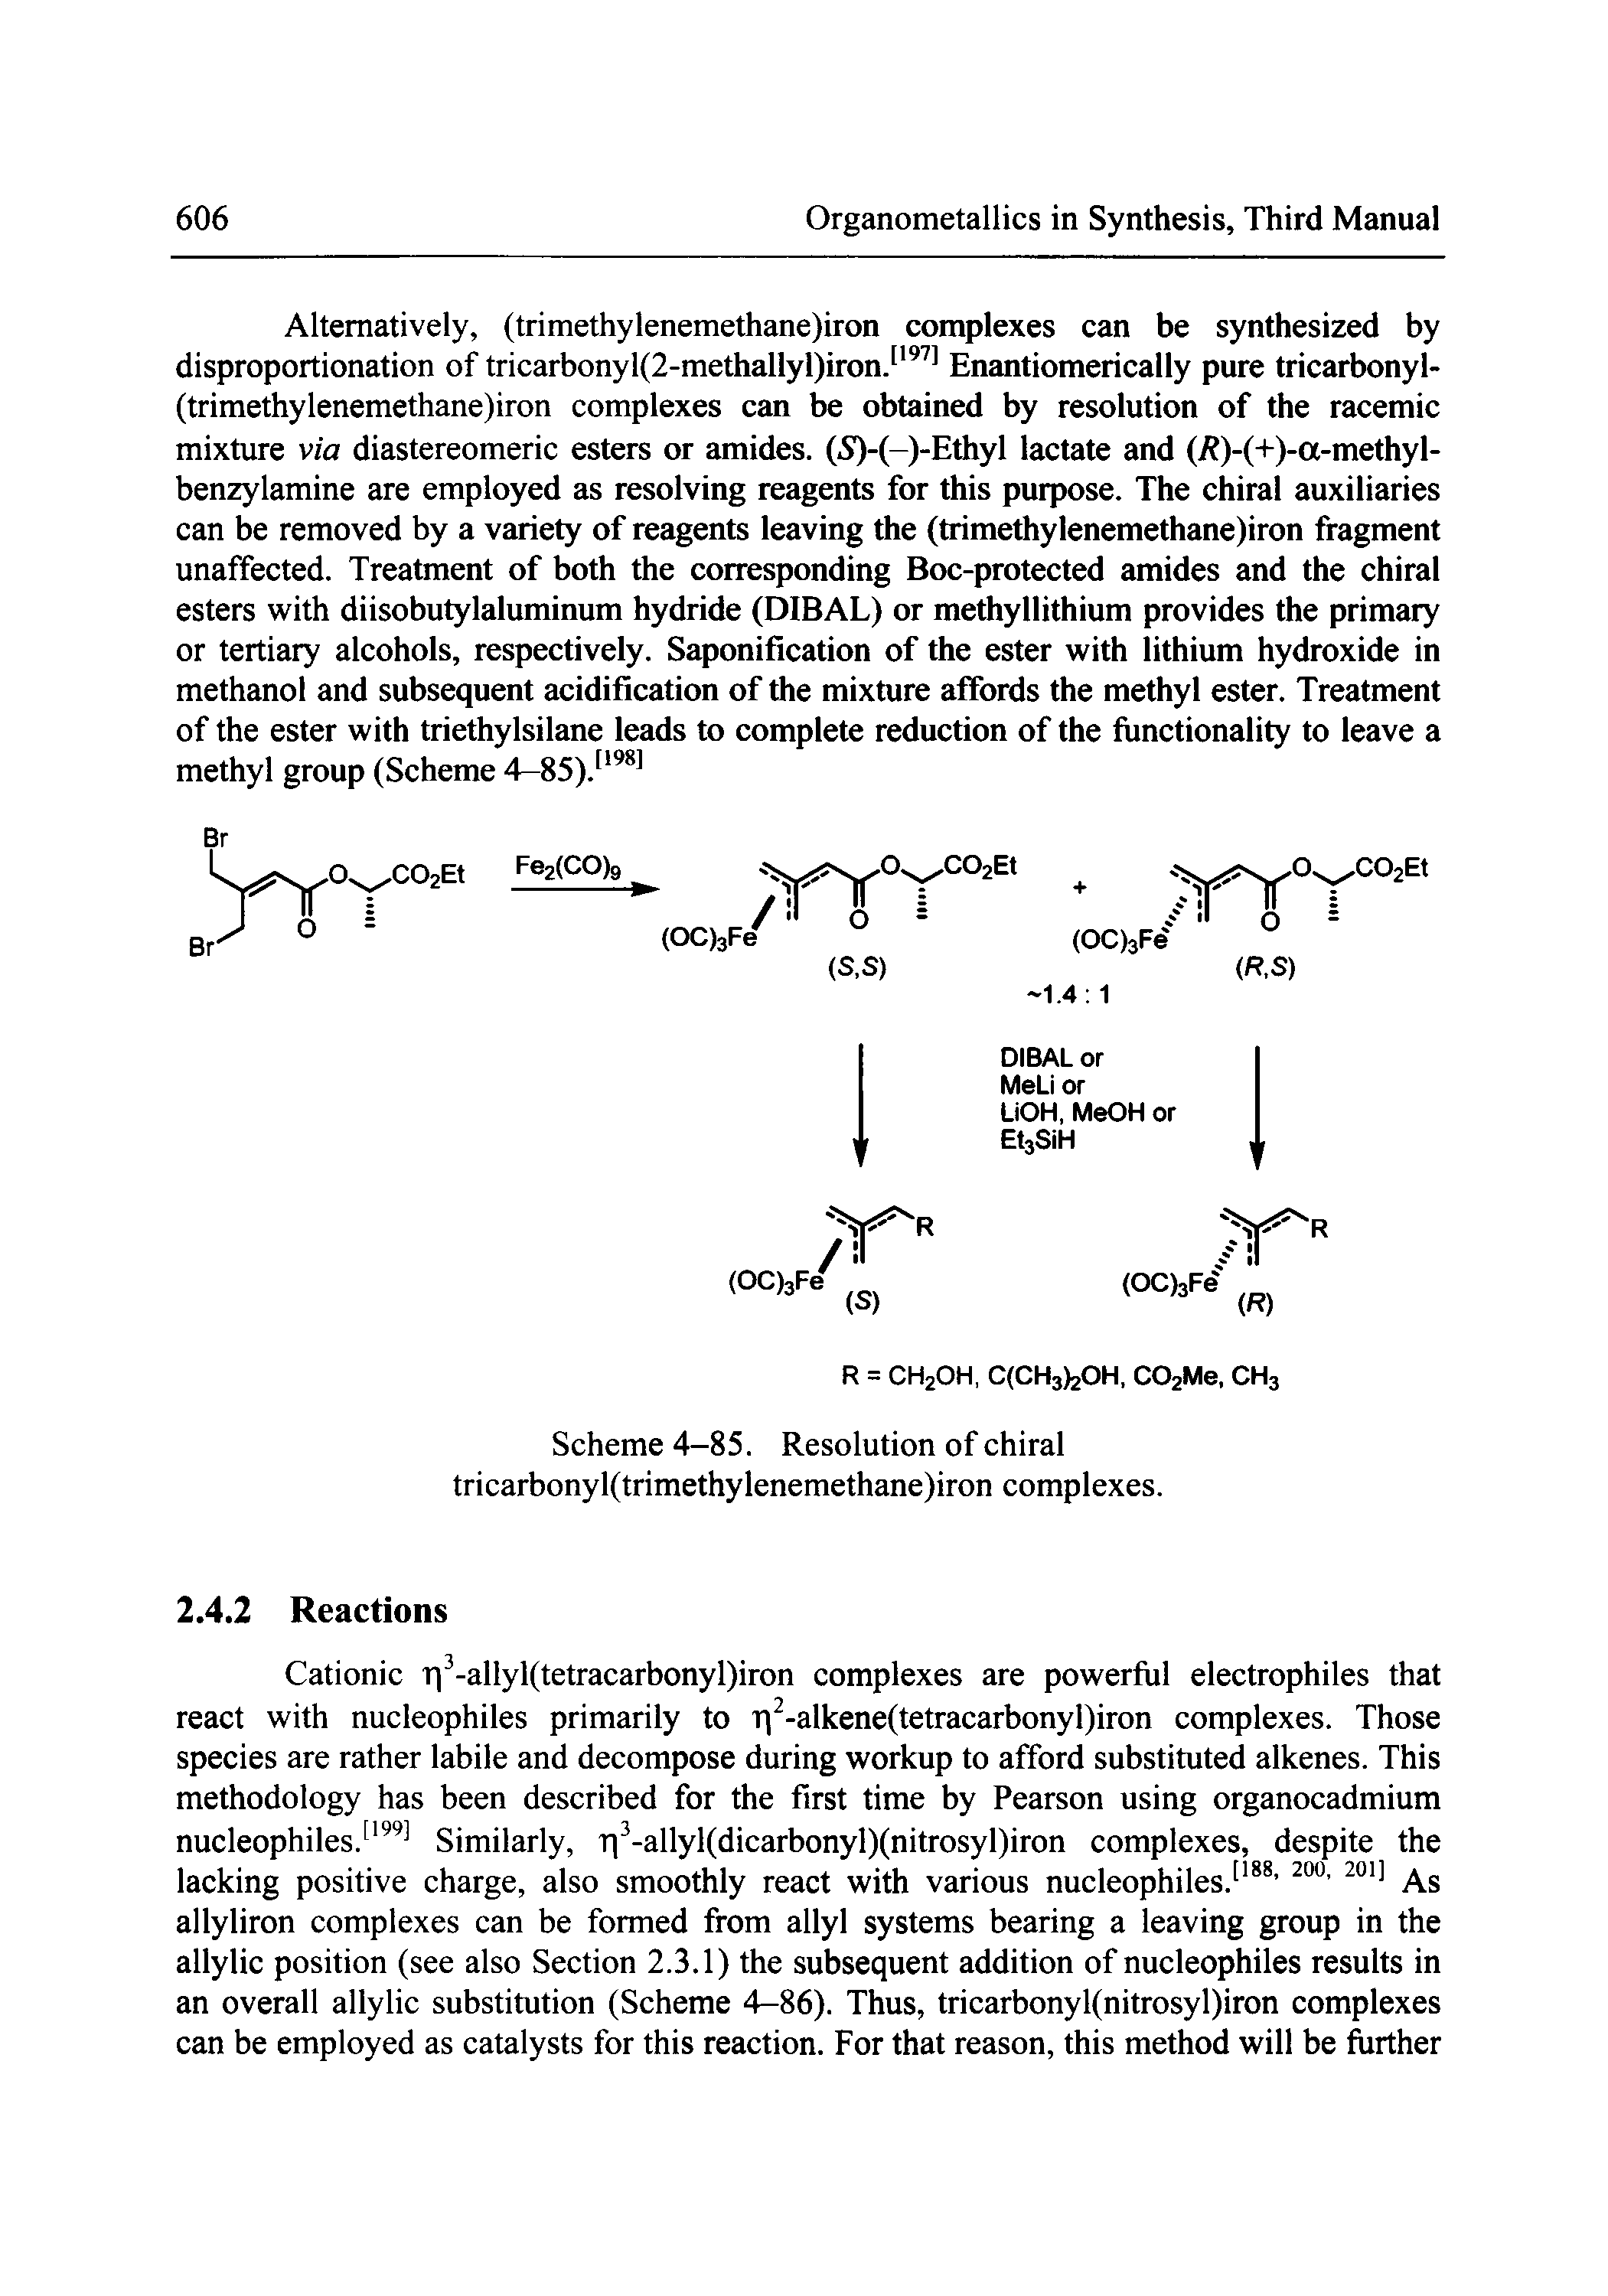 Scheme 4-85. Resolution of chiral tricarbonyl(trimethylenemethane)iron complexes.